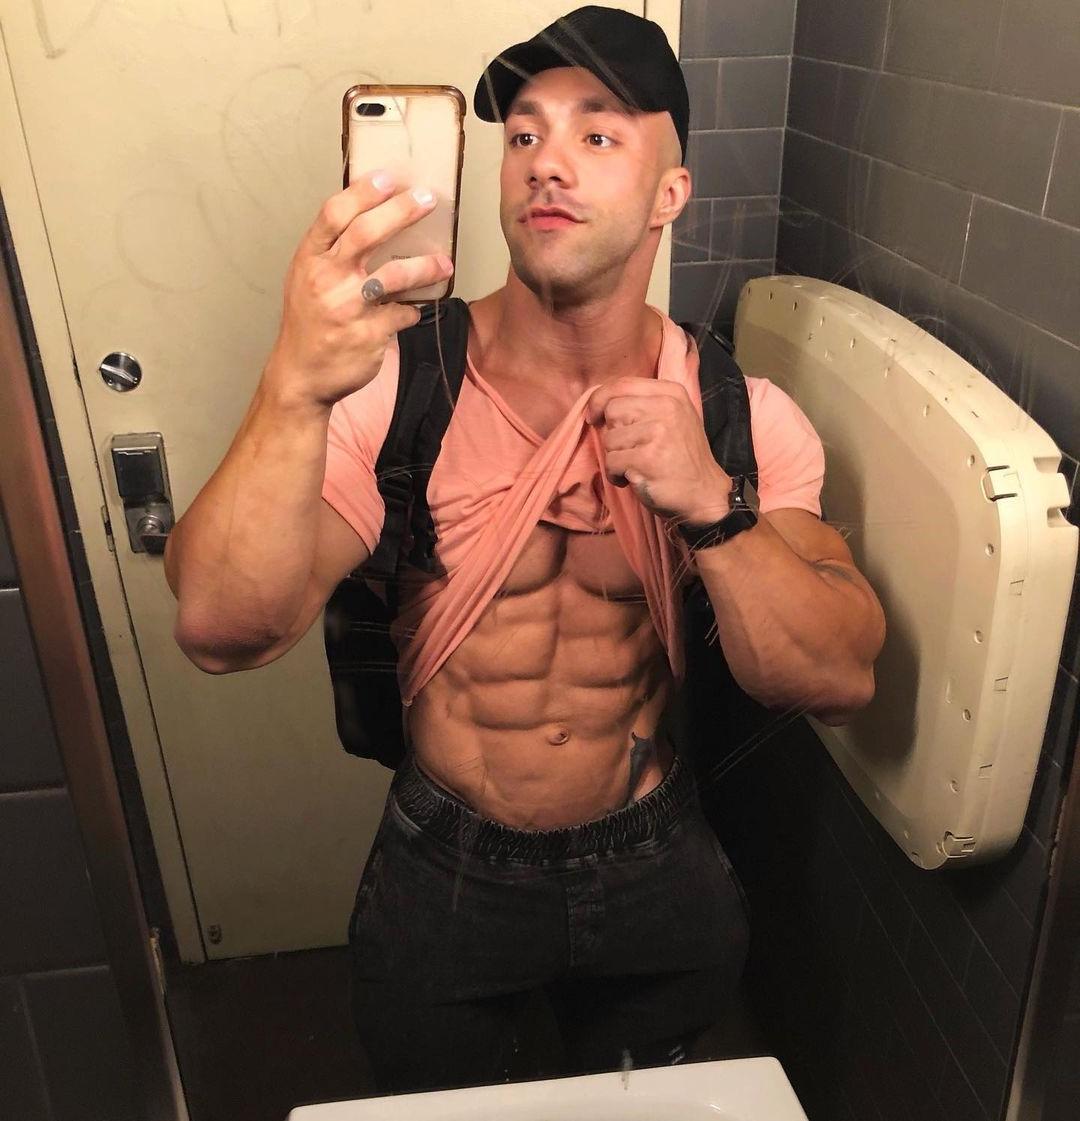 naughty-muscular-shirtless-brazilian-young-bodybuilder-lucas-fiuza-sexy-abs-bathroom-fun-selfie